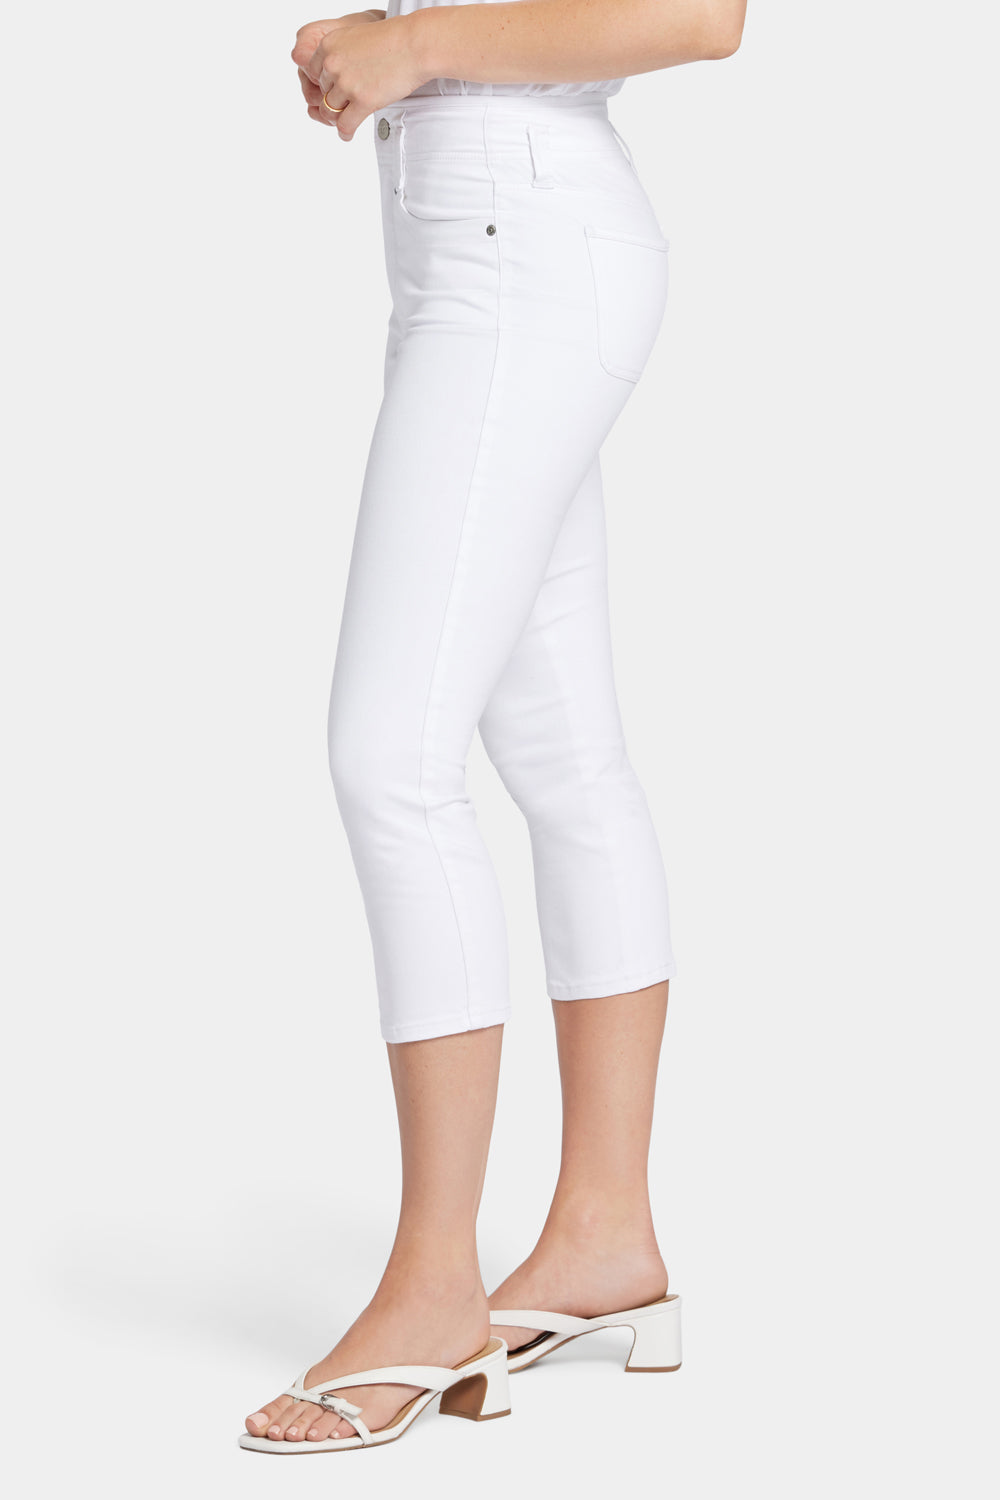 NYDJ Ami Skinny Capri Jeans With High Rise - Optic White